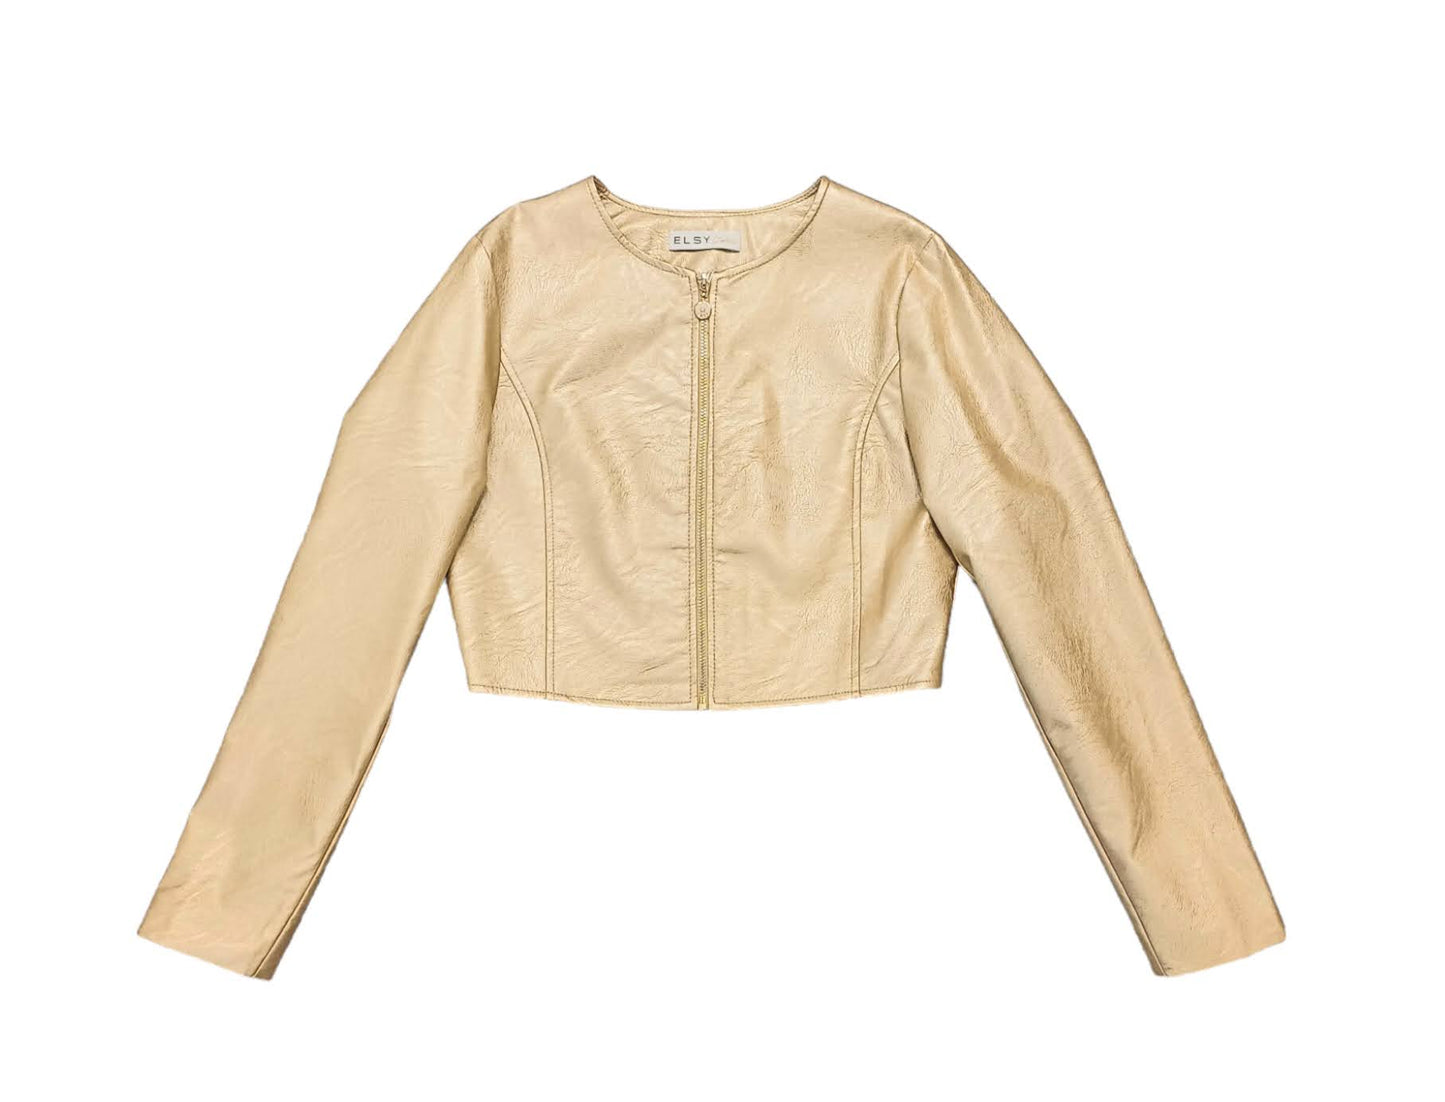 ELSY Short Leather Jacket in Platinum Gold Color